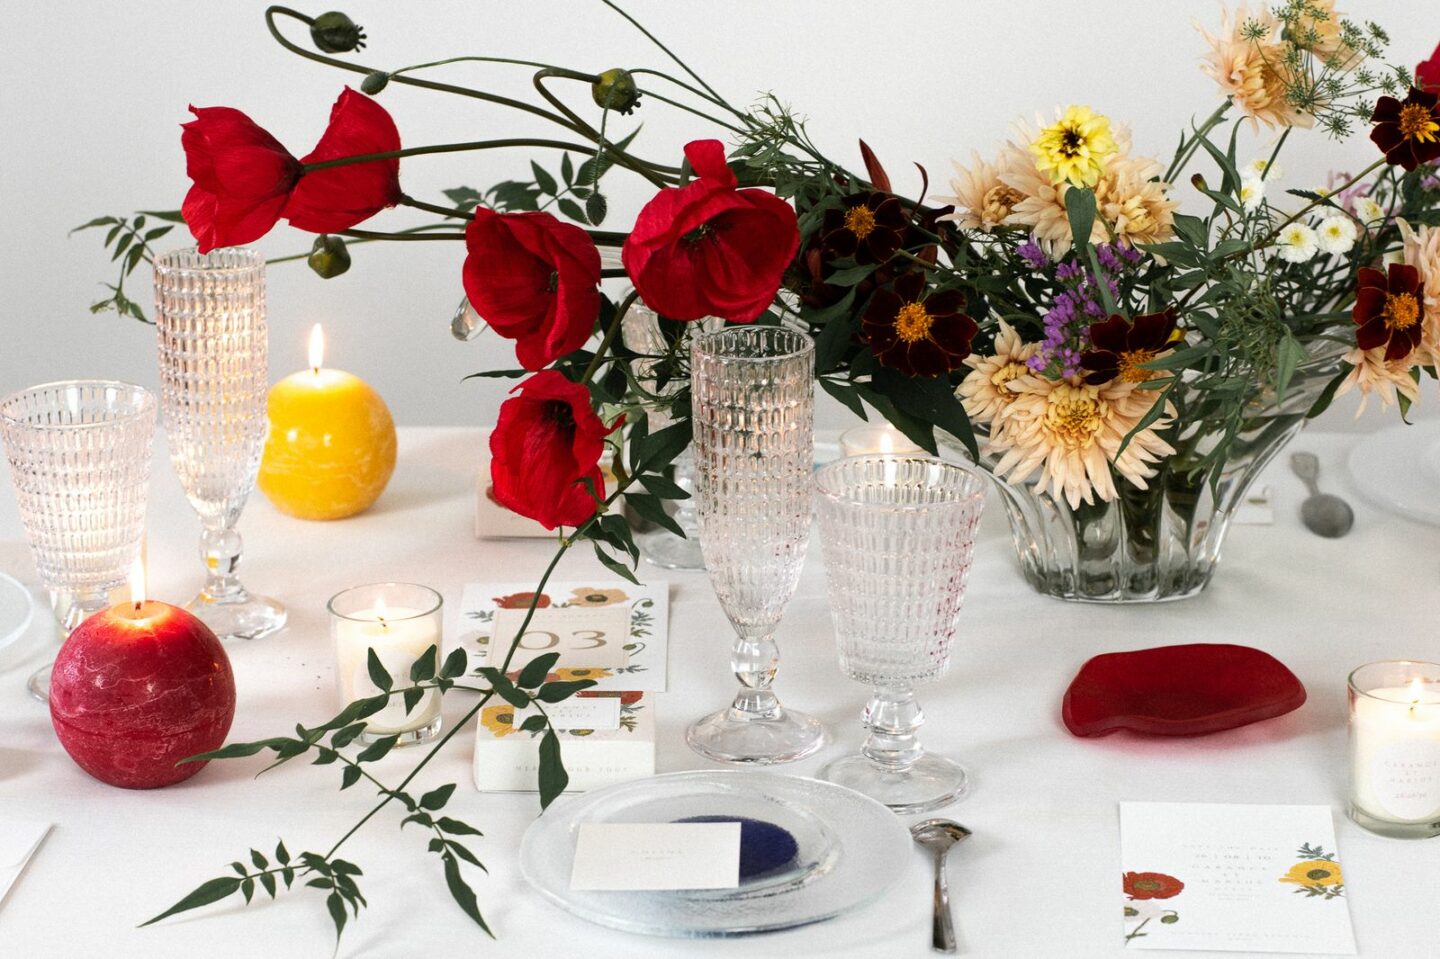 Décoration : Une table de mariage autour du coquelicot